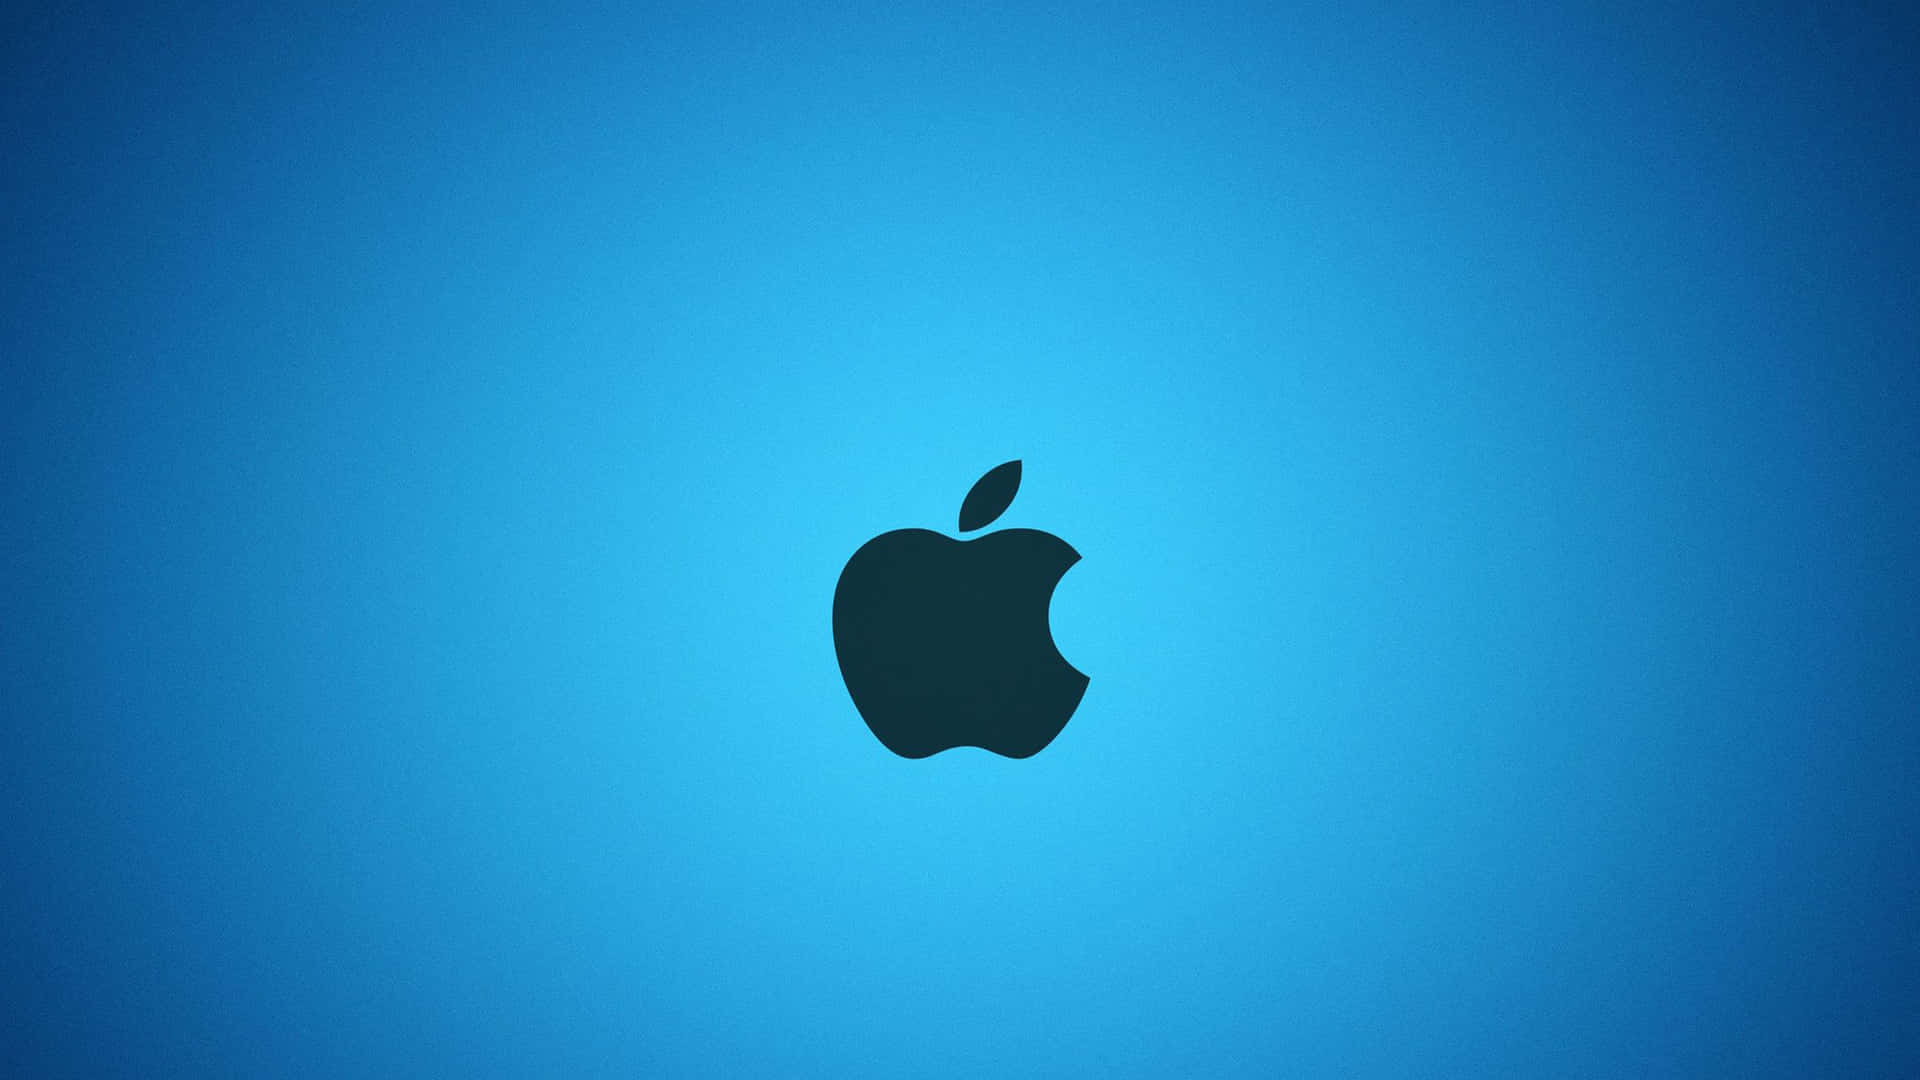 Logoda Apple Preto Em Gradiente Azul. Papel de Parede